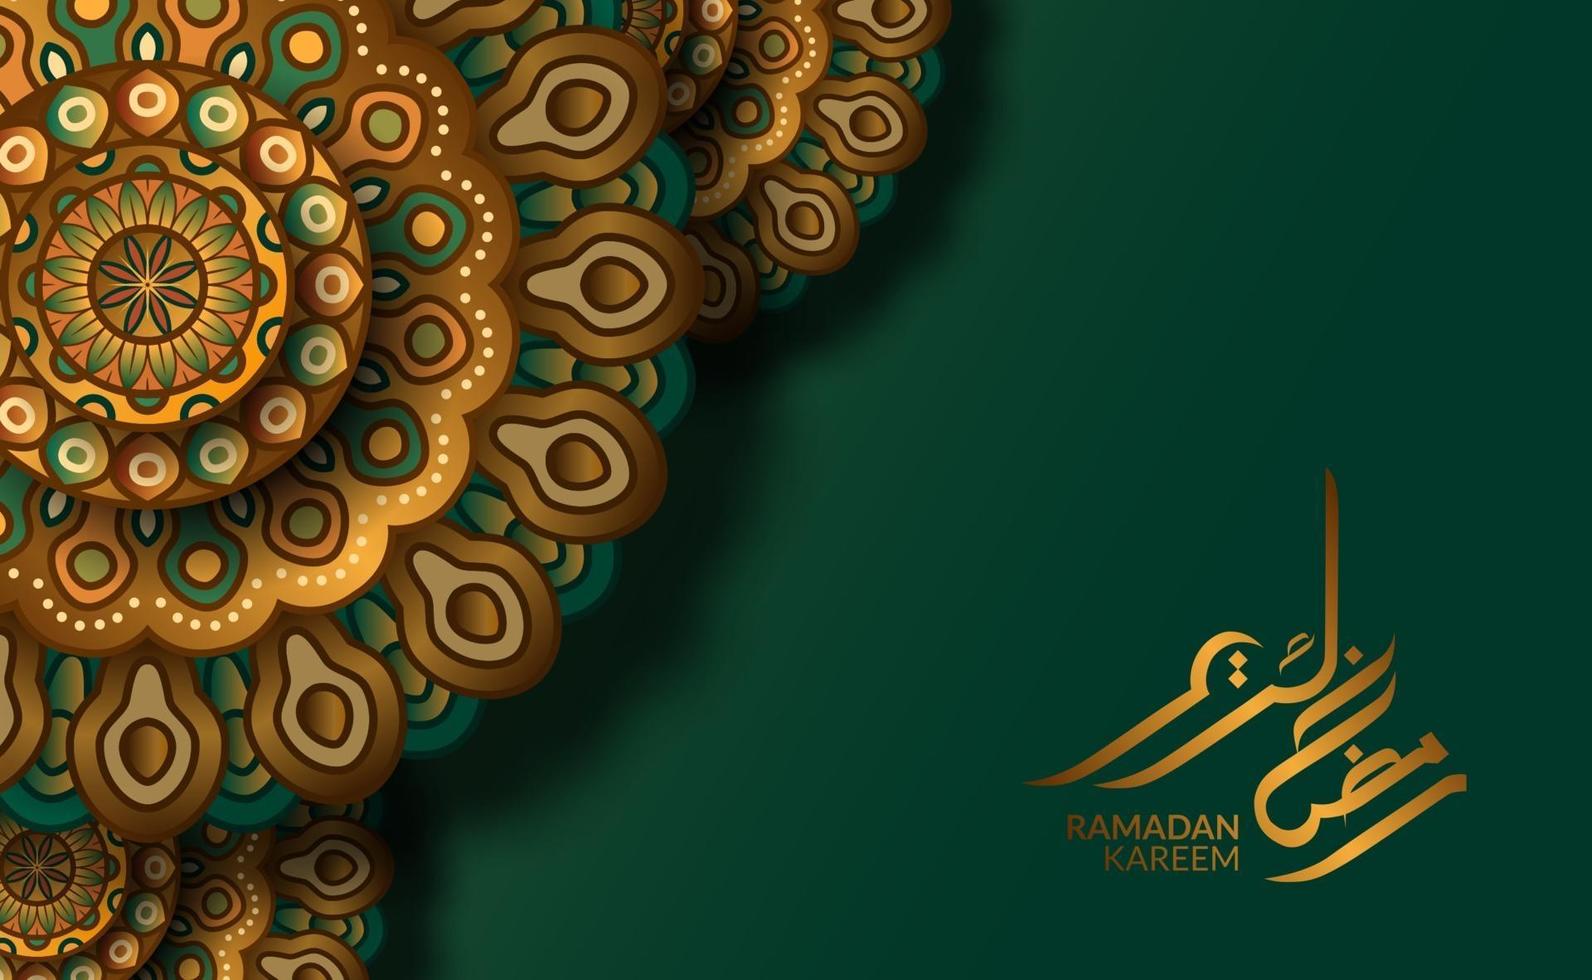 islamisk gratulationskortmall. lyxmotiv geometriskt traditionellt mandala mönster med grön bakgrund och ramadan kareem kalligrafi vektor